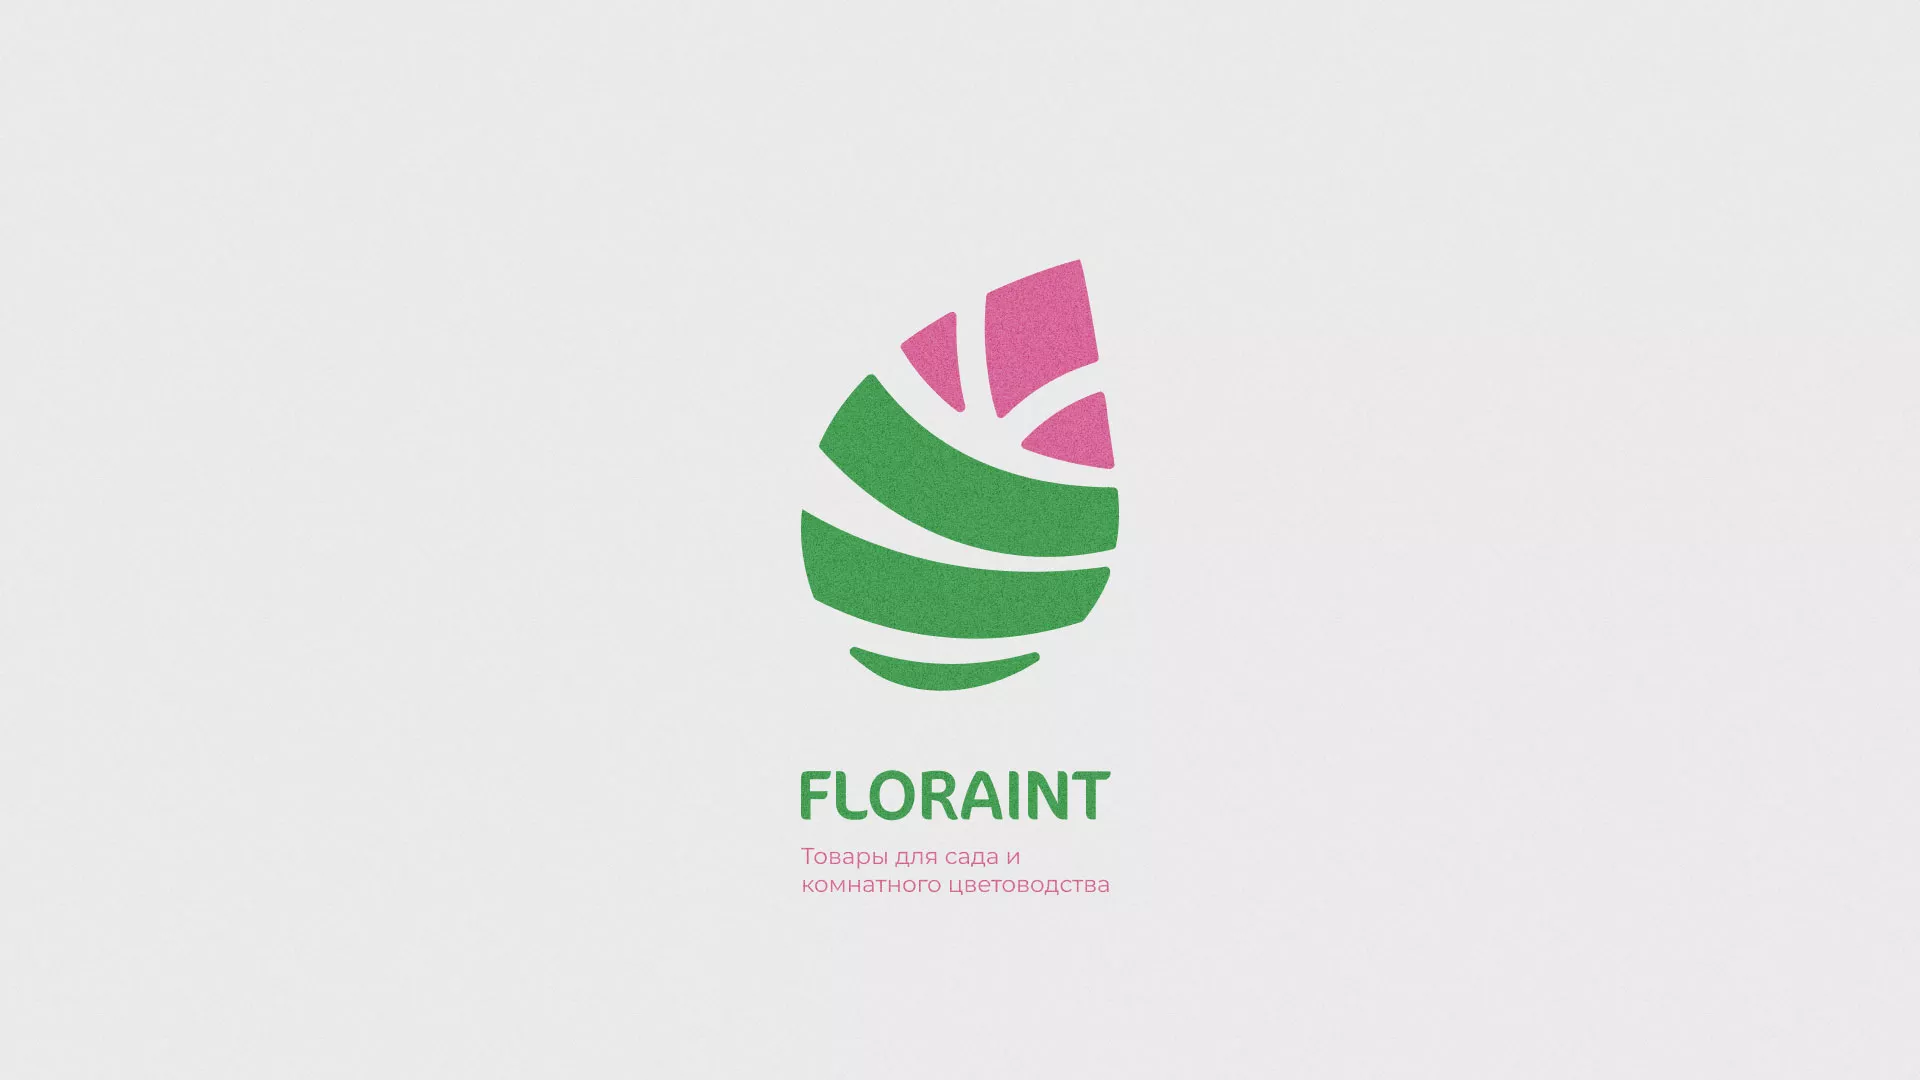 Разработка оформления профиля Instagram для магазина «Floraint» в Навашино